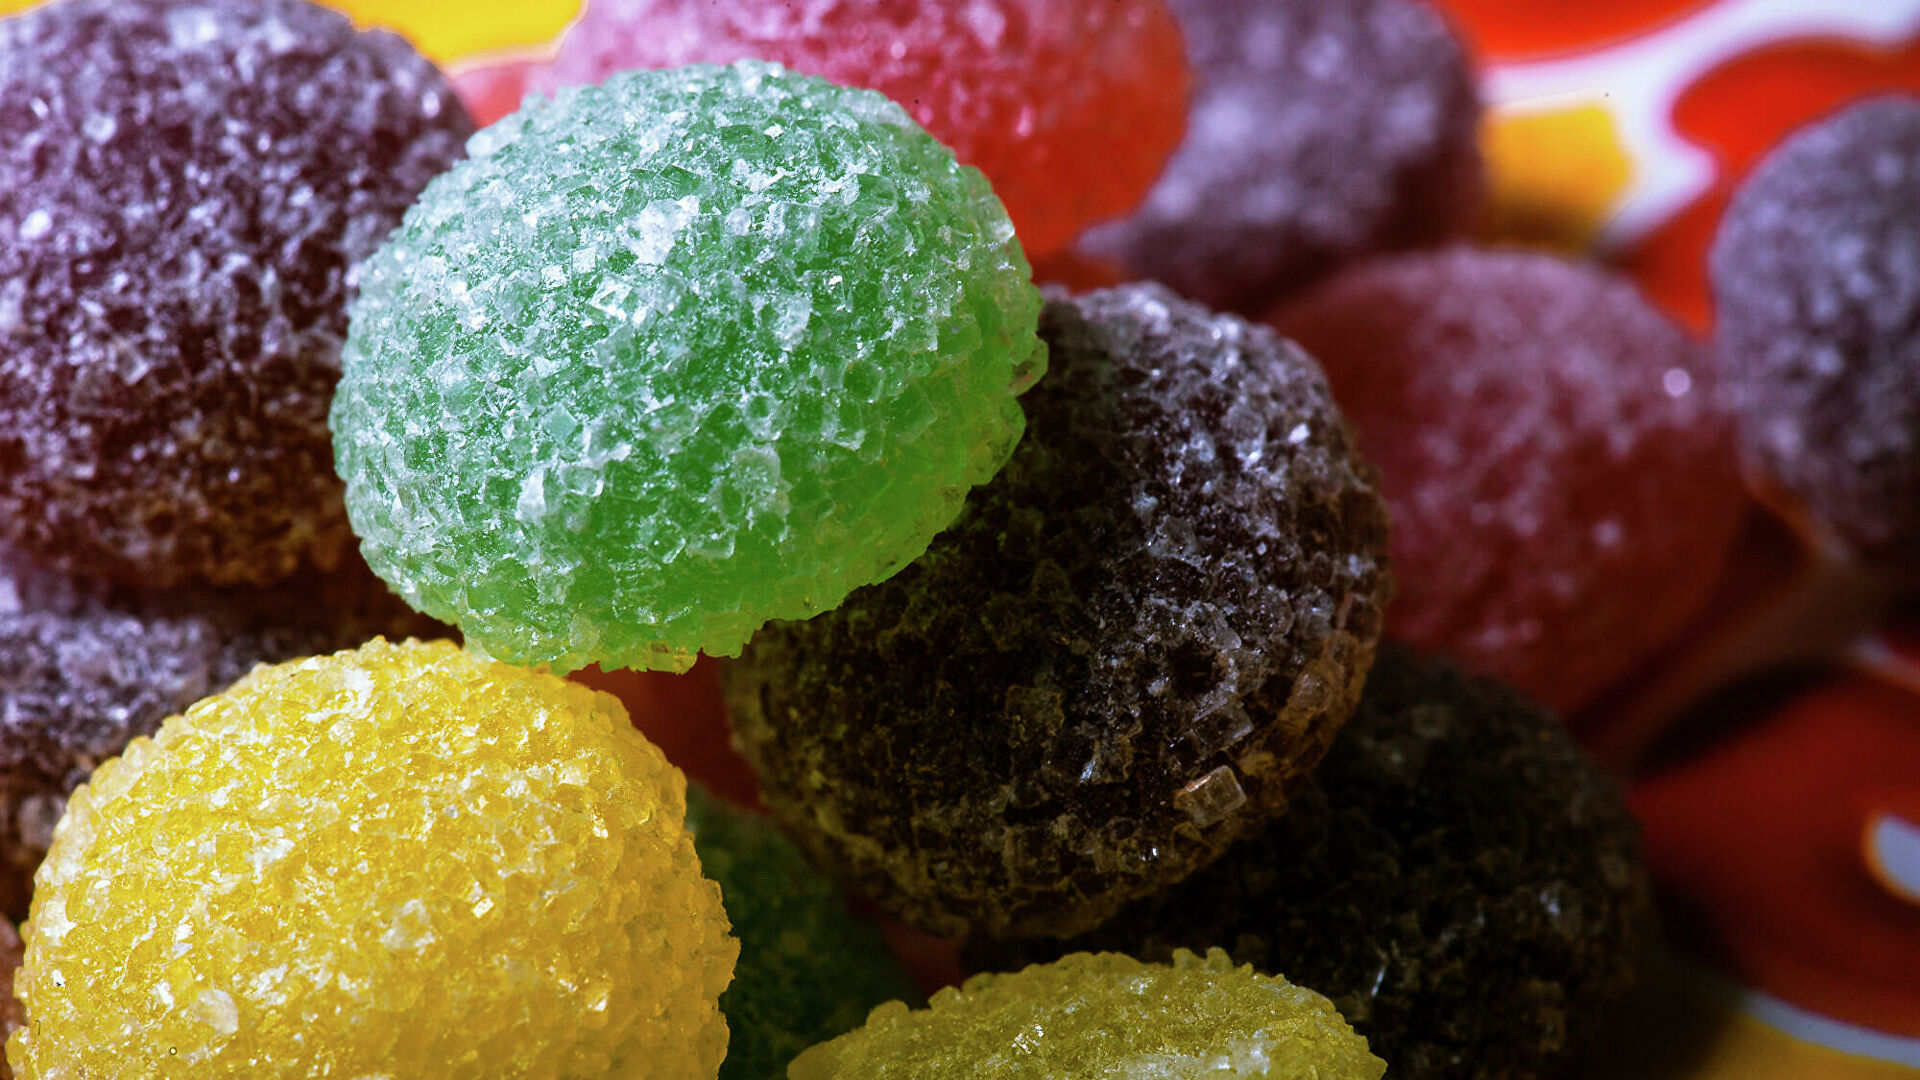 İspanyol hükümeti, çocuklara yönelik şekerli gıdaların reklamına yasak getirecek